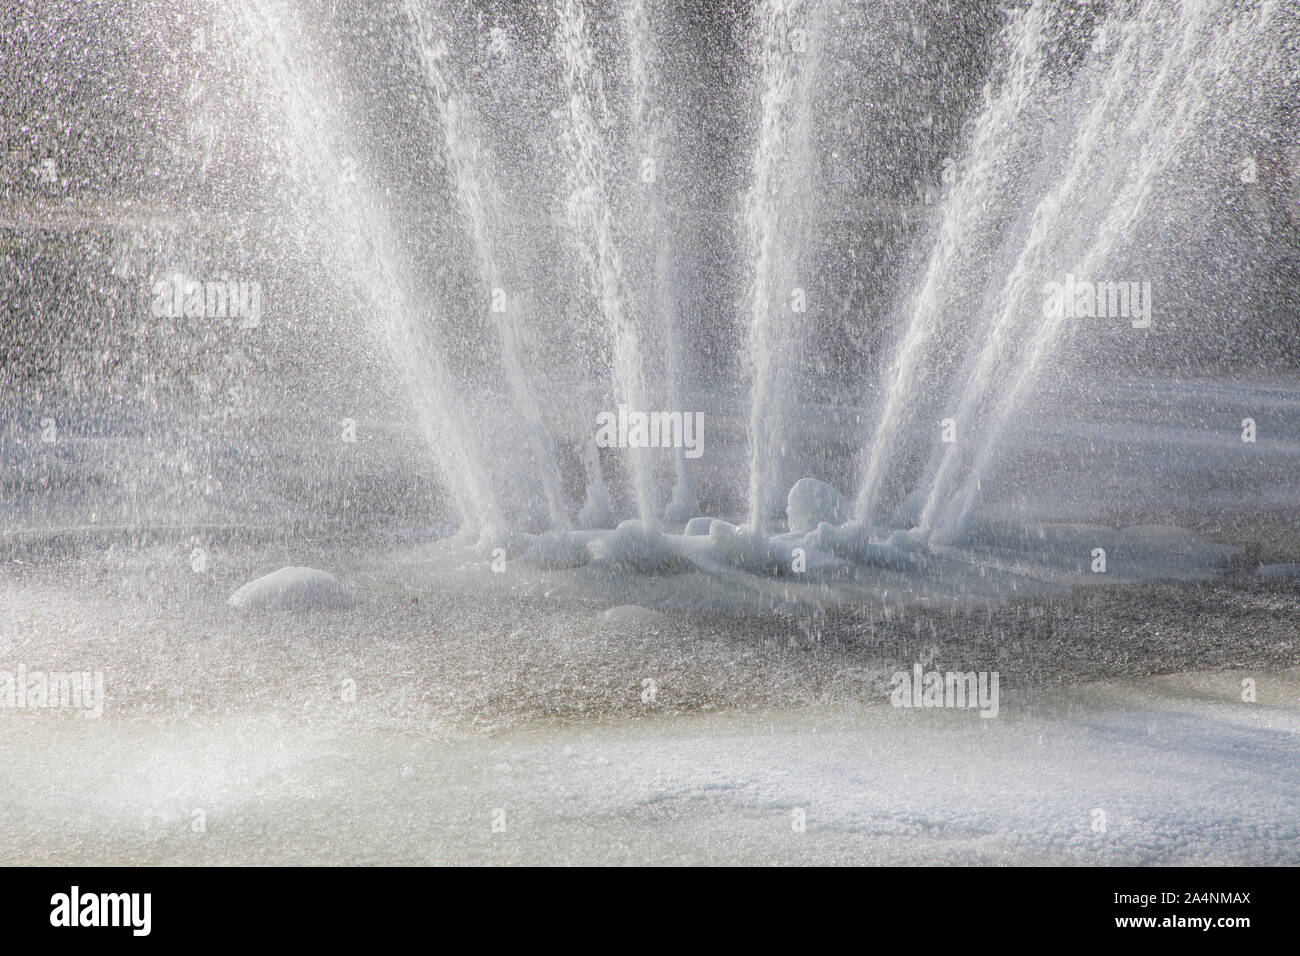 Springbrunnen, Brunnen, im Winter, das Wasser spritzt, trotz Frost, minus Temperaturen, das Wasserbecken eingefroren ist, Stockfoto